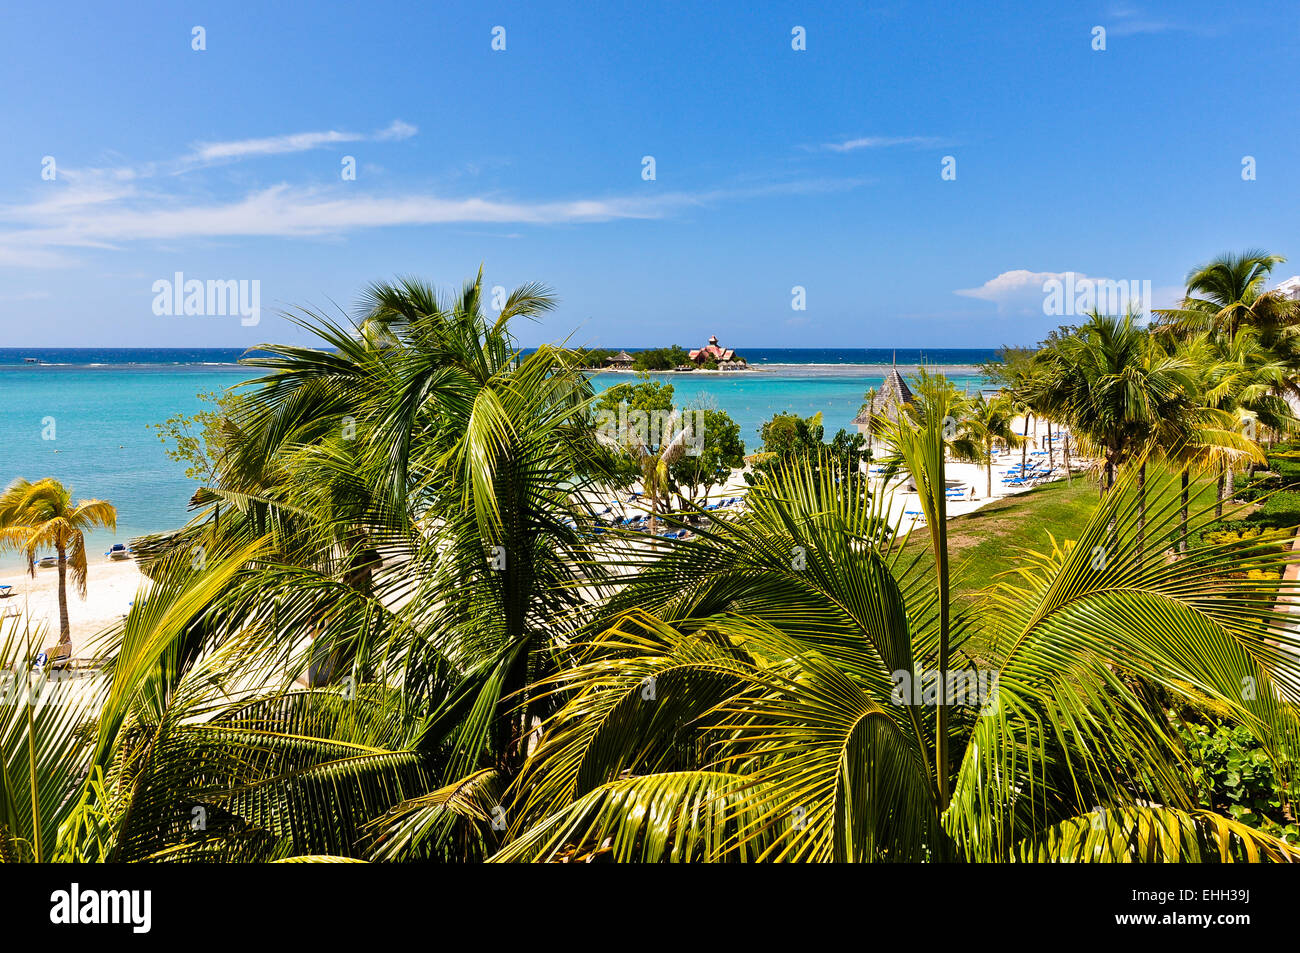 Beautiful caribbean beach Stock Photo